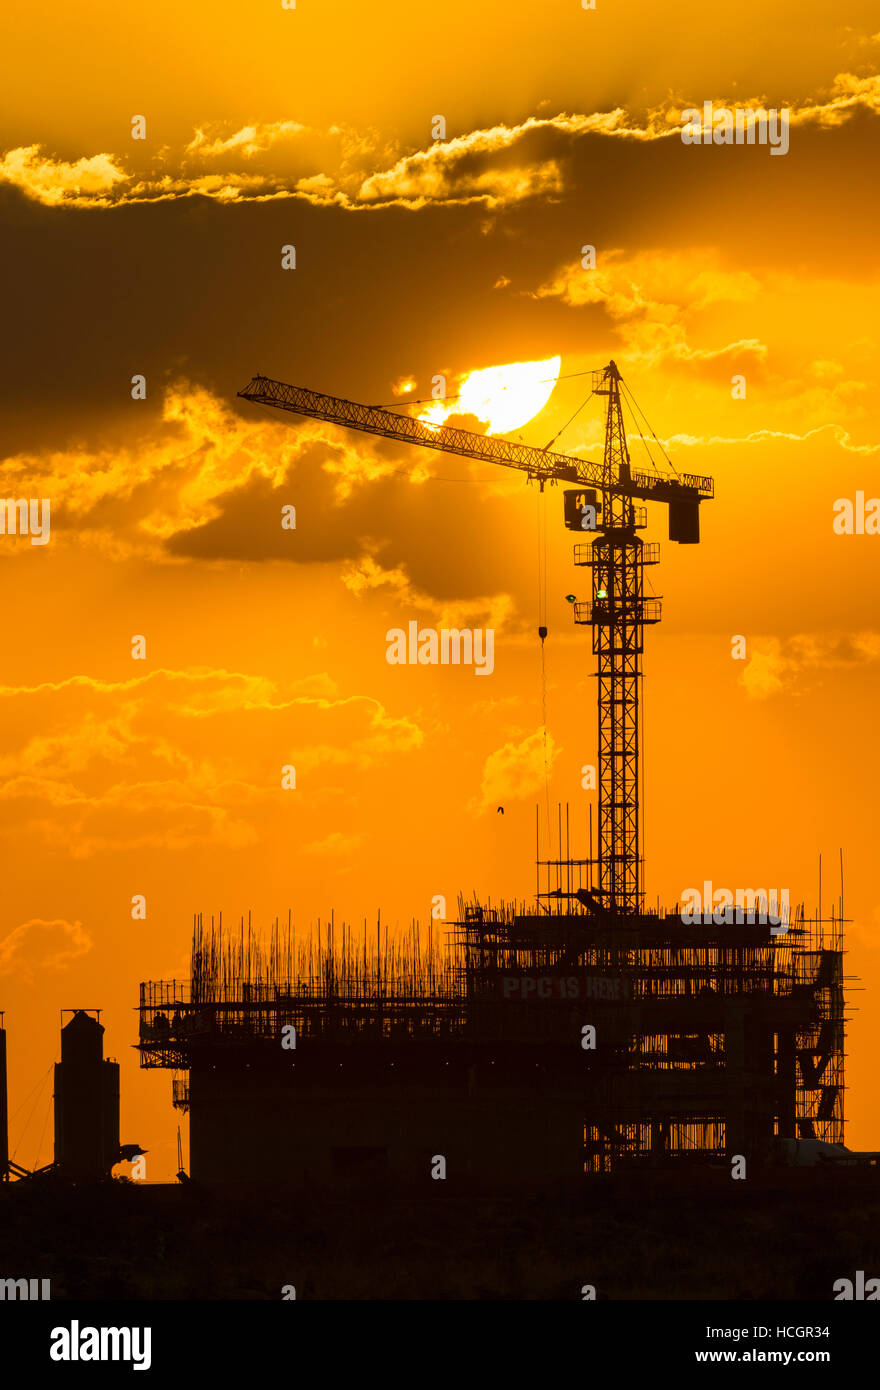 construction Zimbabwe Africa crane sunset develop Stock Photo